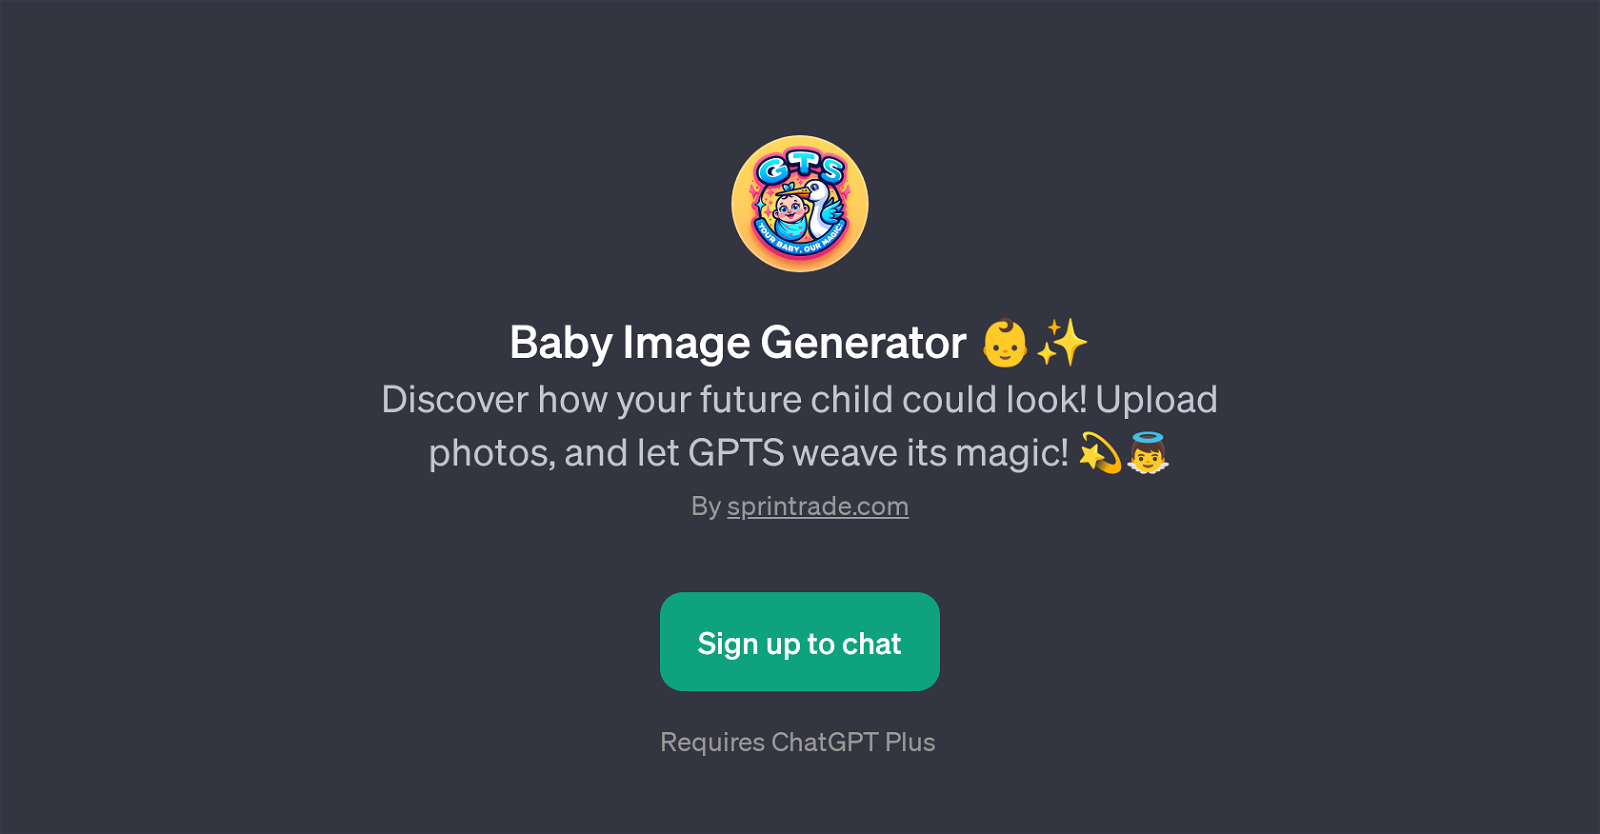 Baby Image Generator website